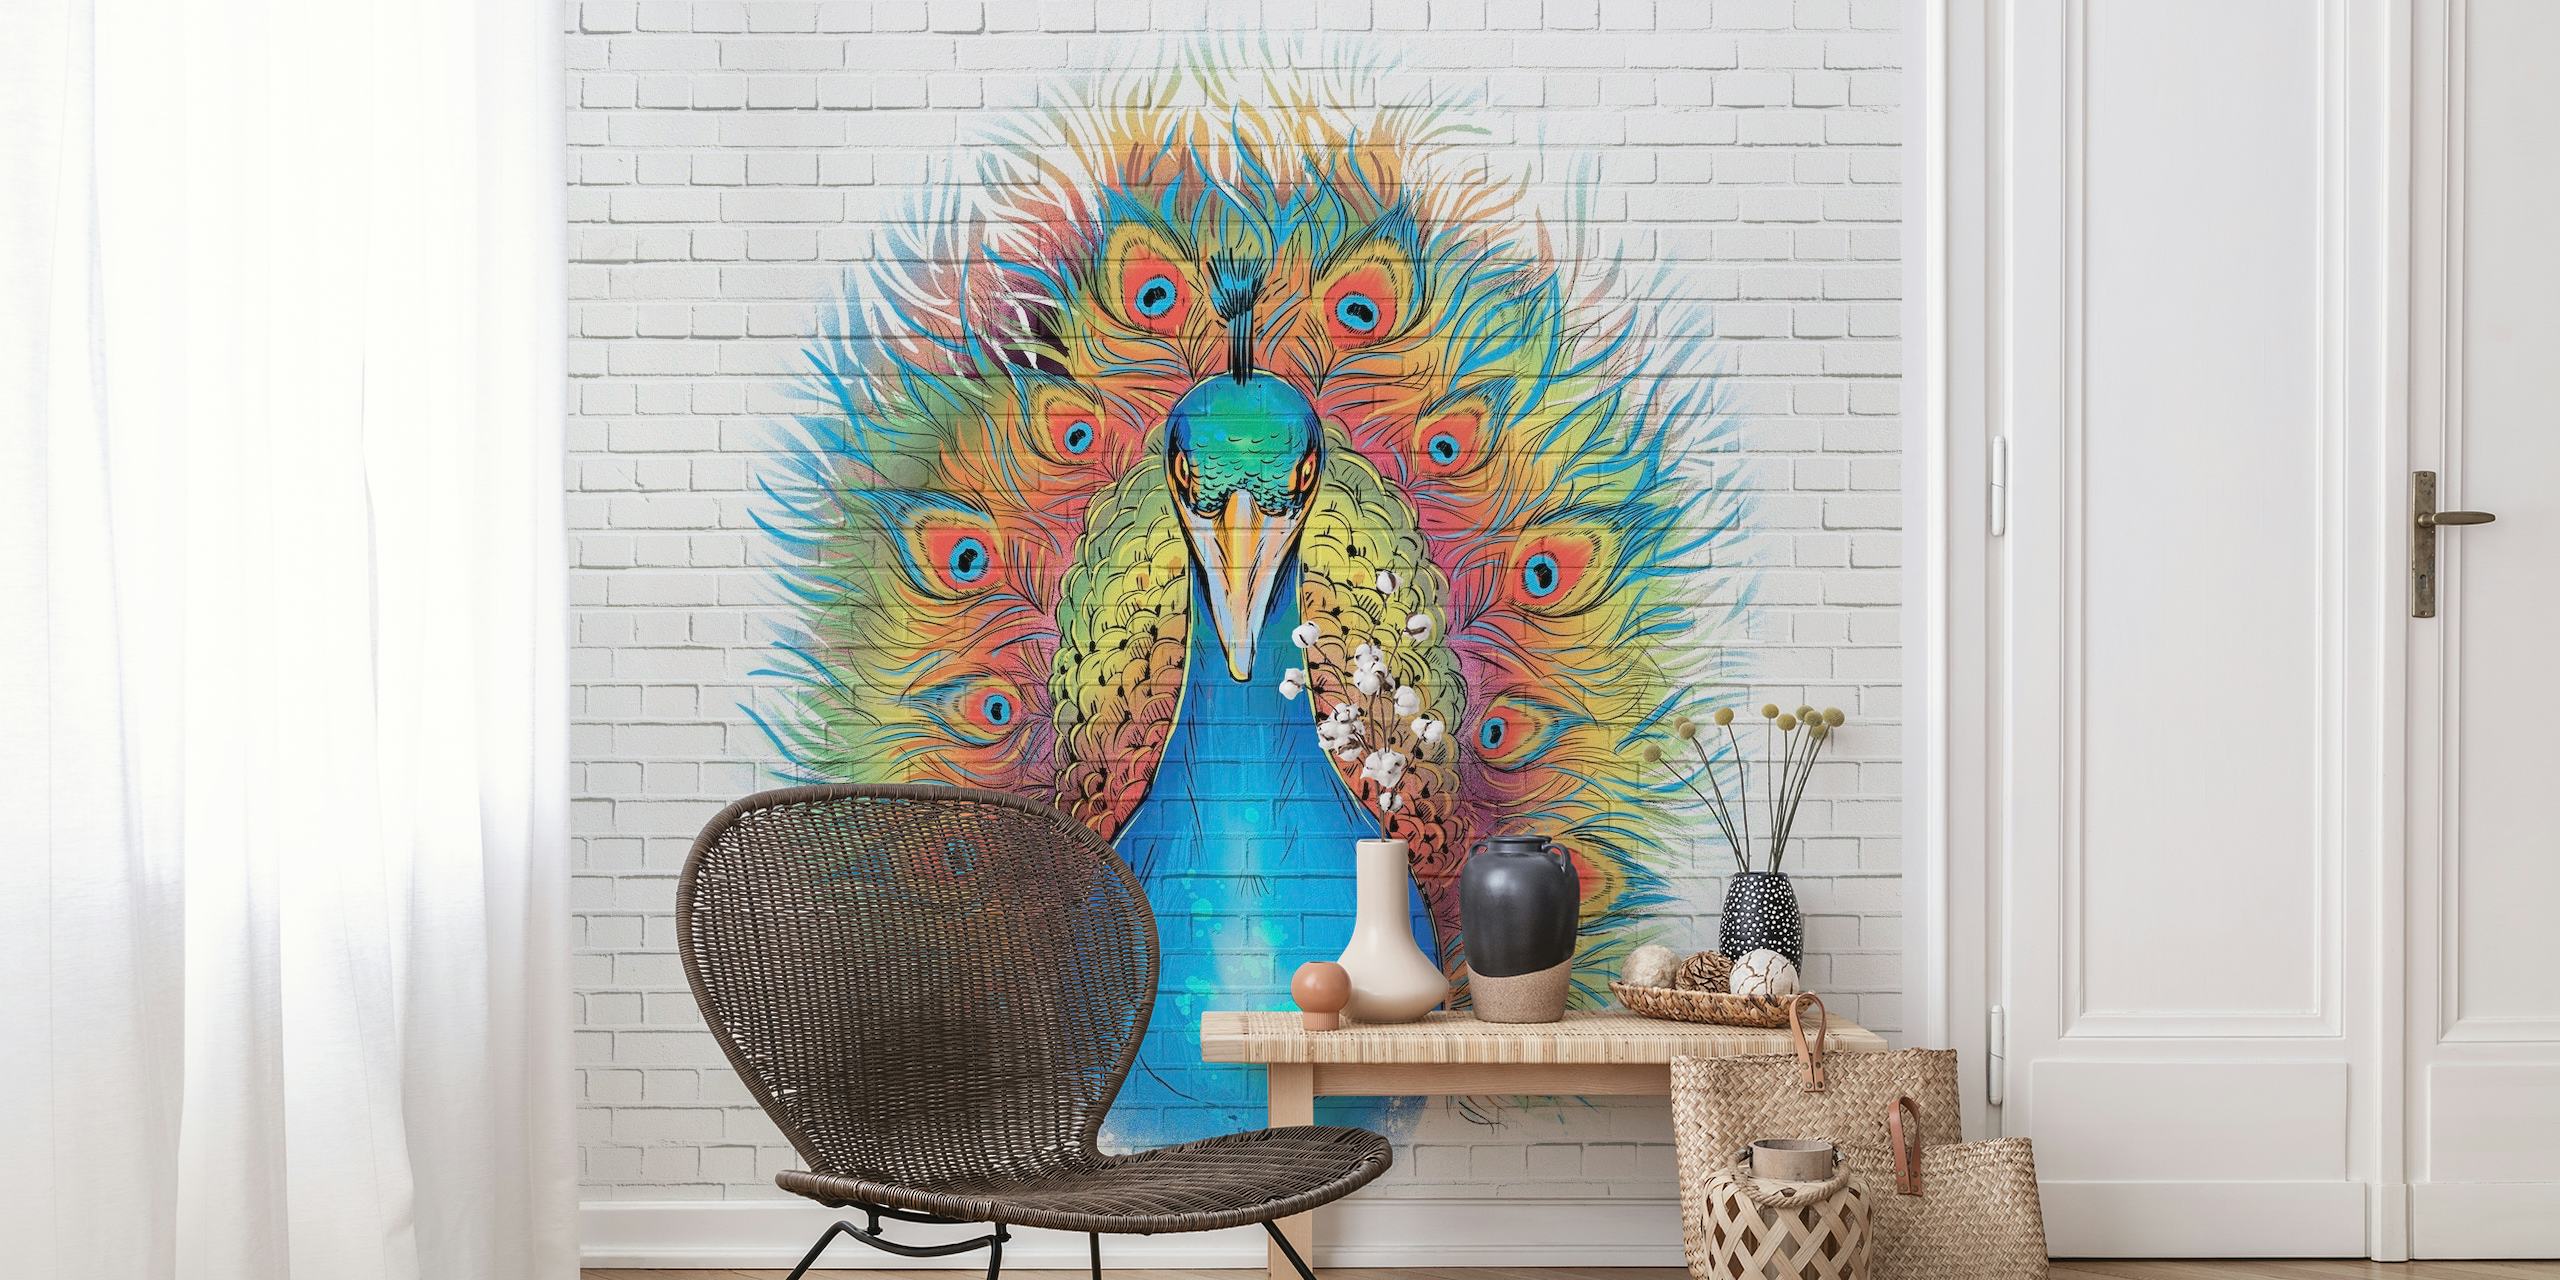 Street-Art-inspiriertes Wandgemälde „Angry Peacock Graffiti“ mit lebhaften Farben auf weißem Backsteinhintergrund